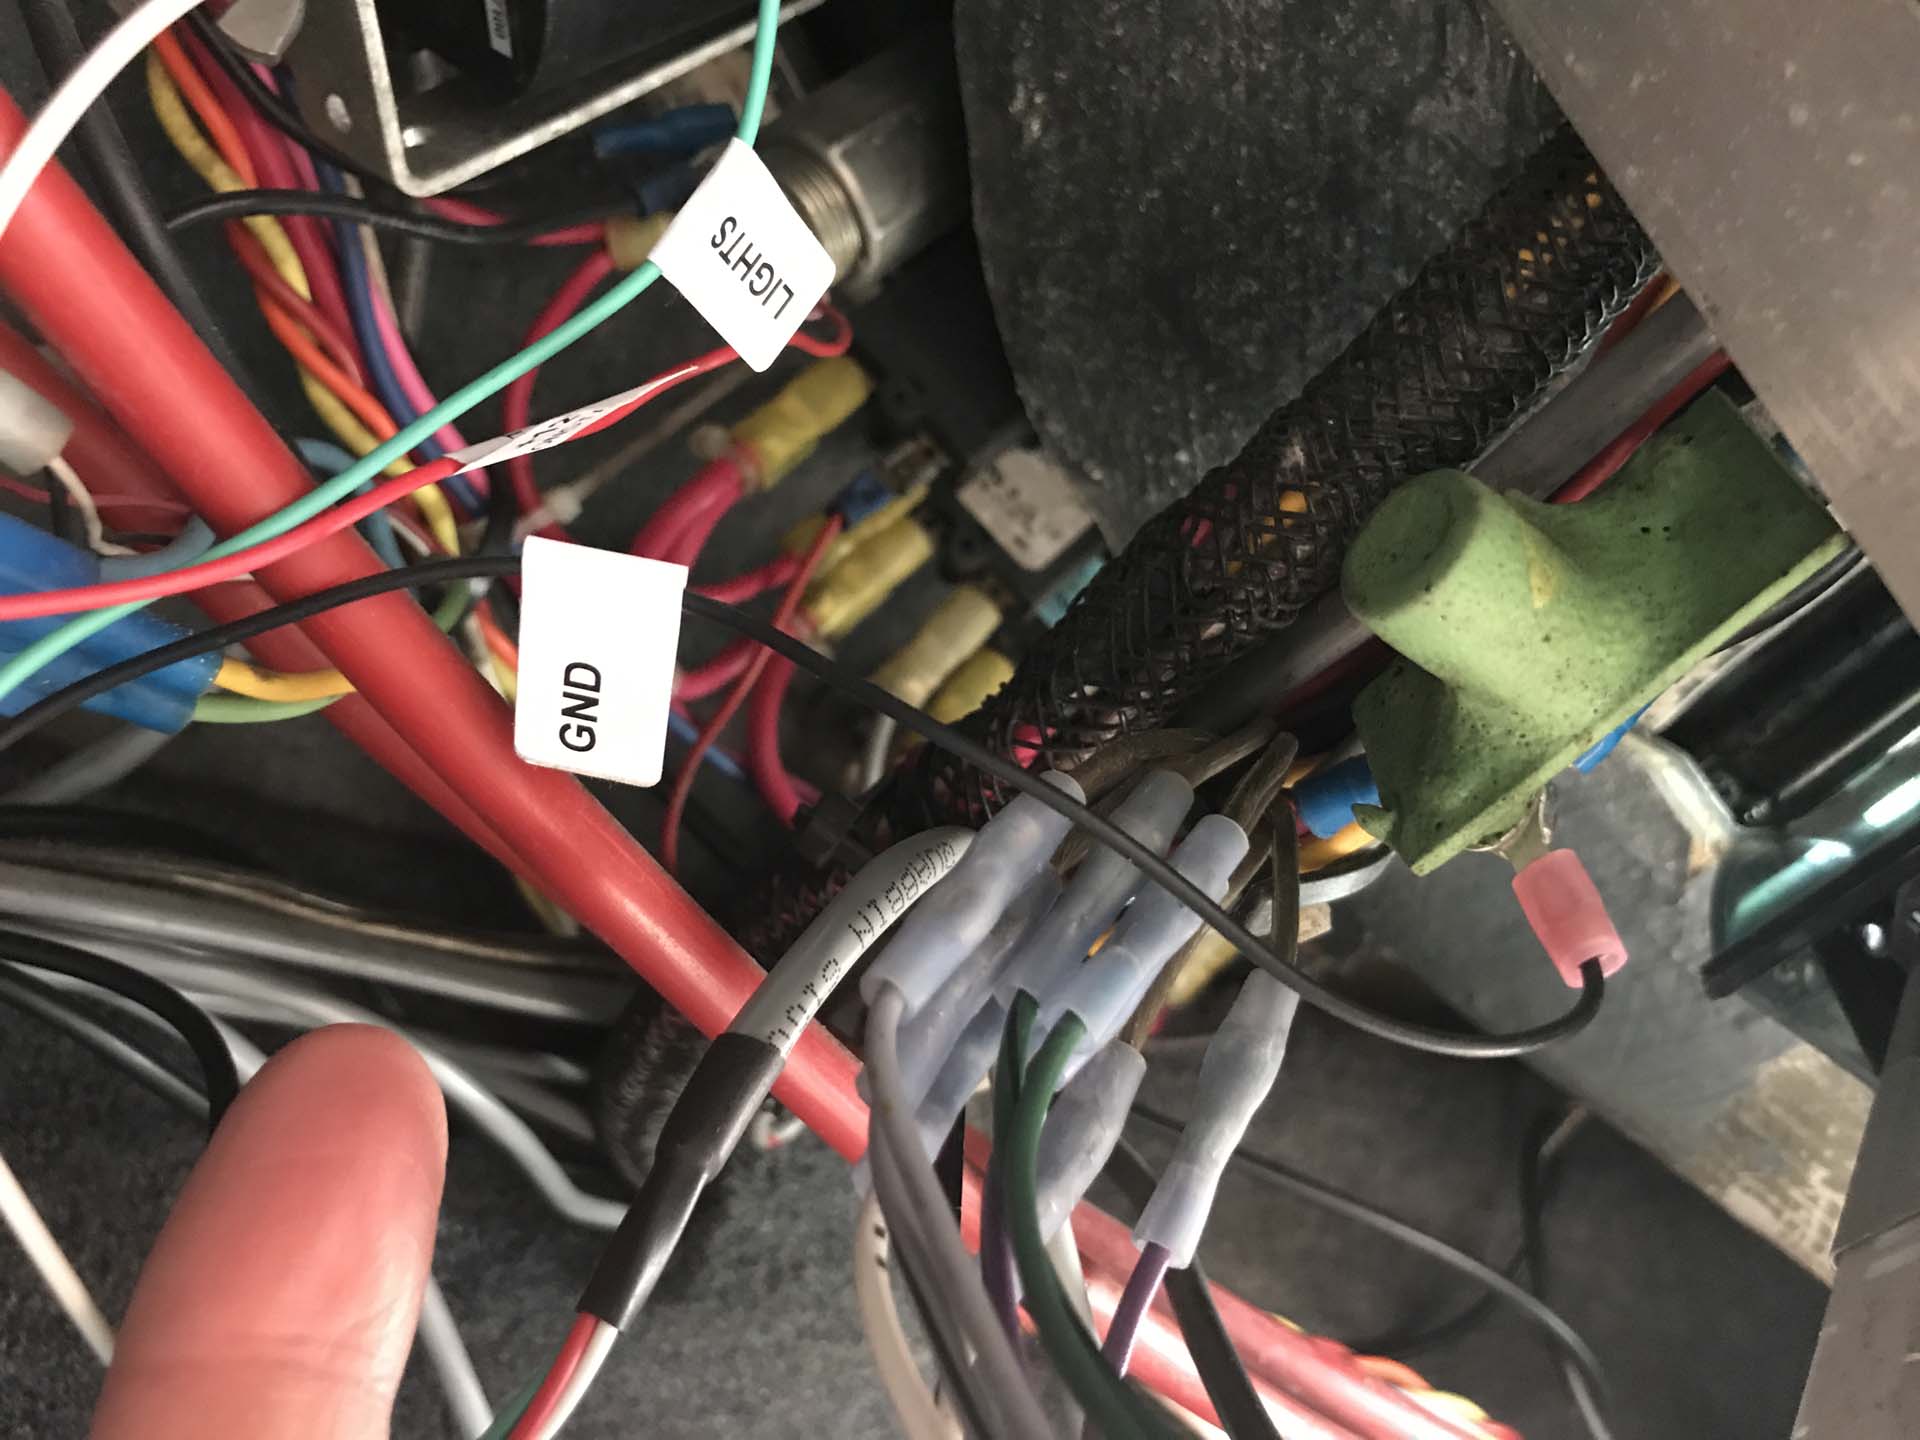 Wiring repair and short circuit tracing